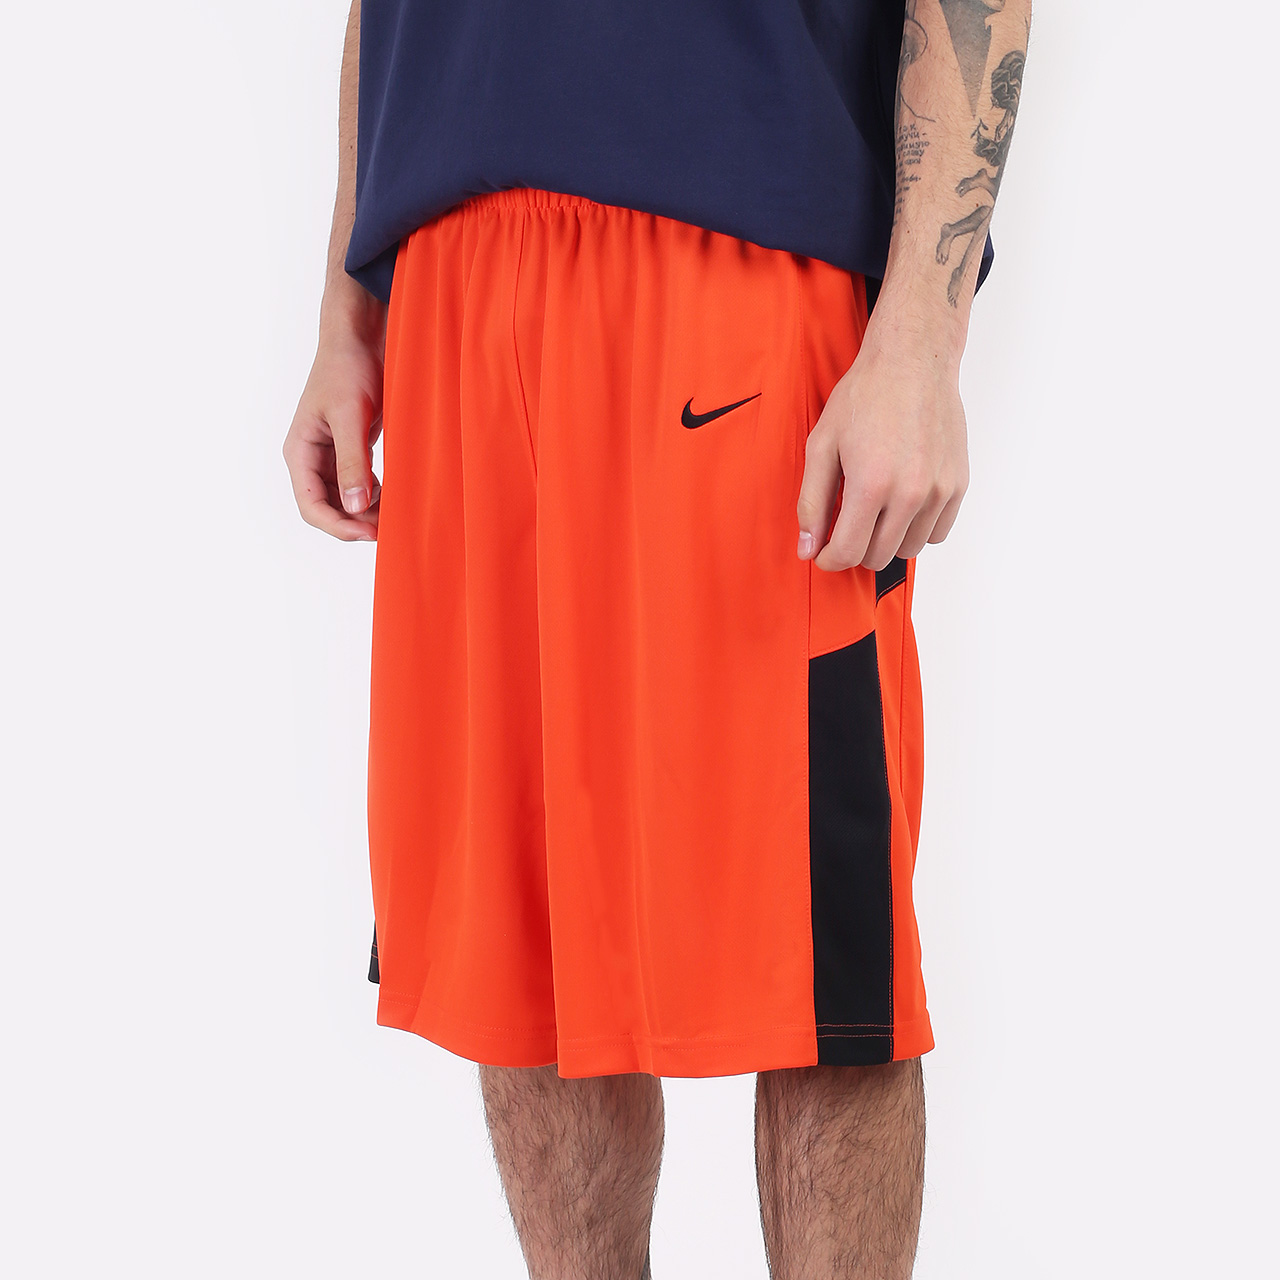 мужские оранжевые шорты Nike Swoosh 802326-891 - цена, описание, фото 1